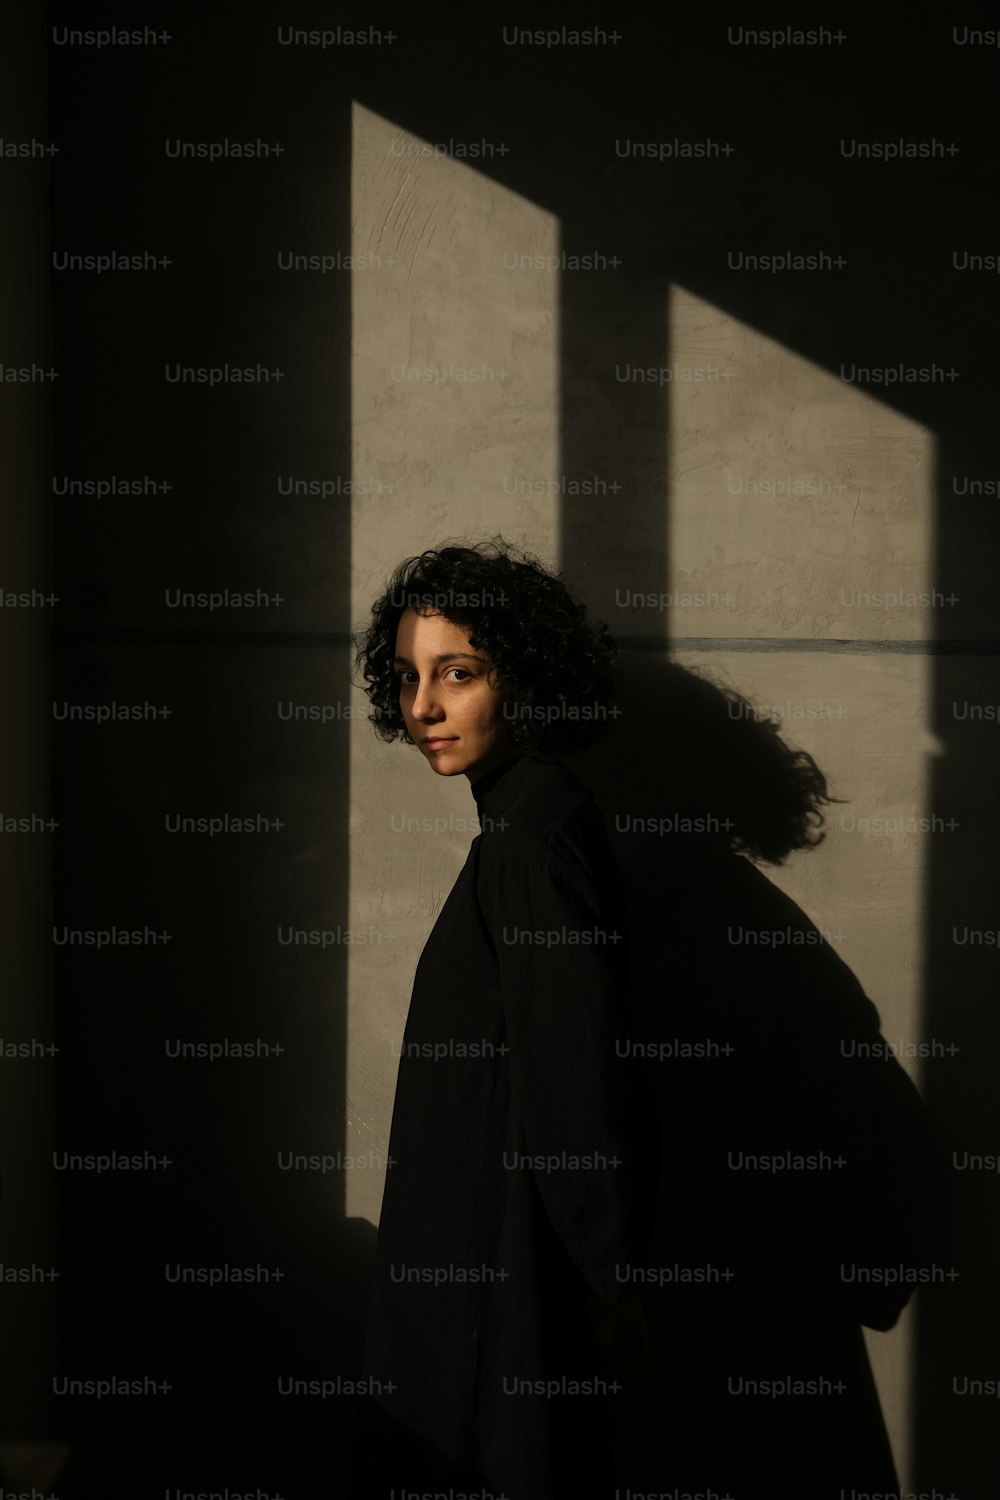 Una mujer de pie en las sombras de una pared